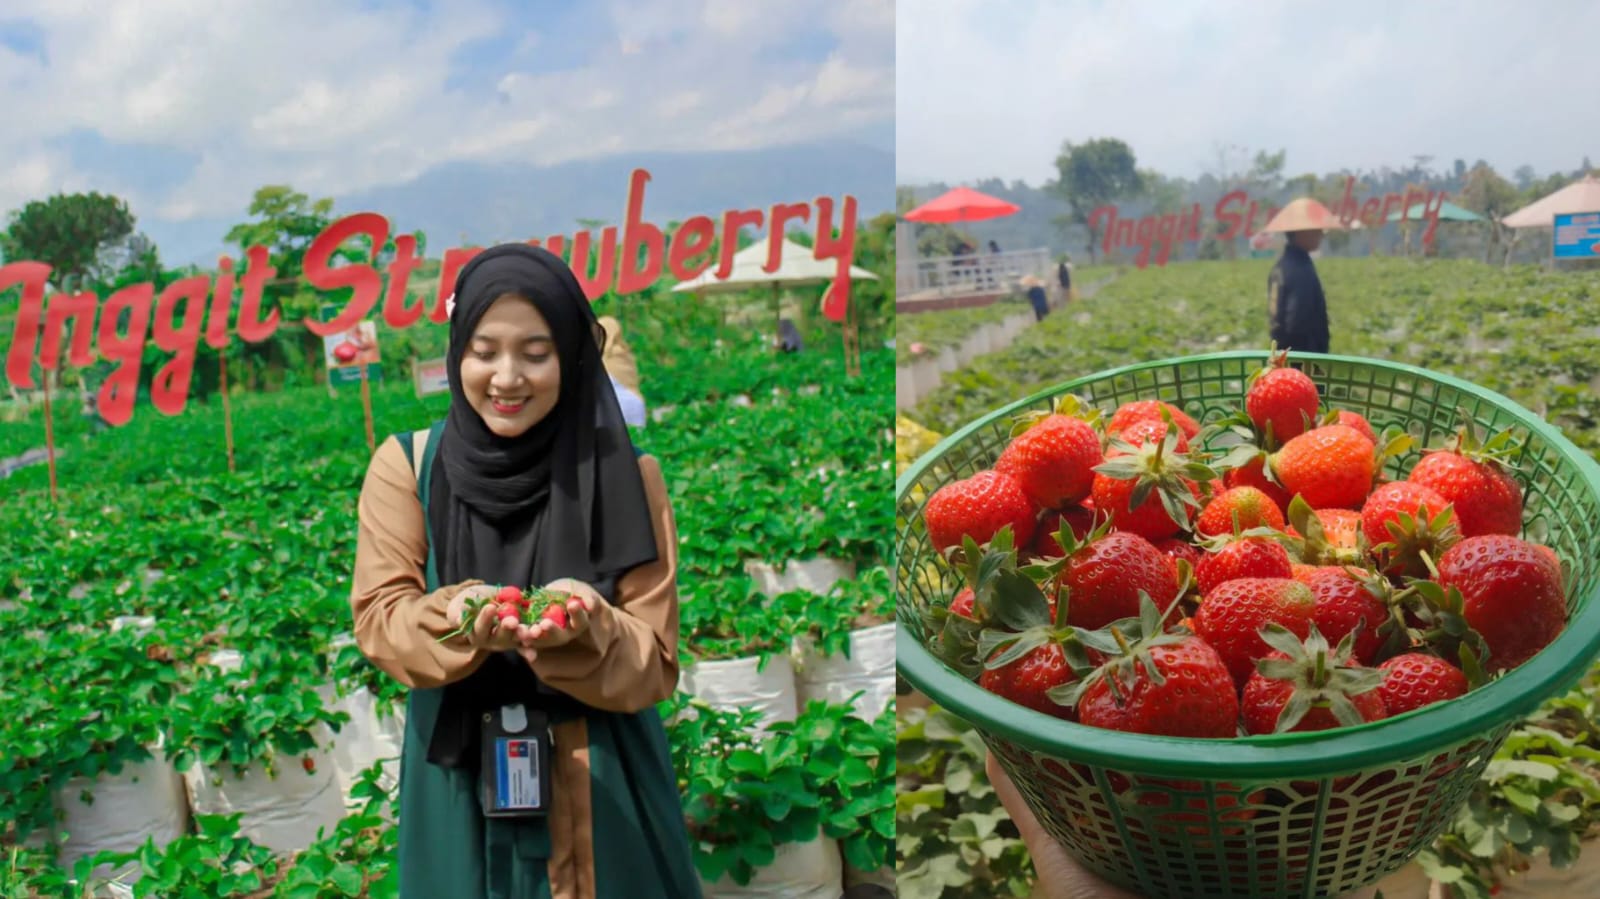 Kebun Inggit Strawberry, Sensasi Wisata Petik Strawberry dengan Pemandangan Indah Dataran Tinggi Magelang